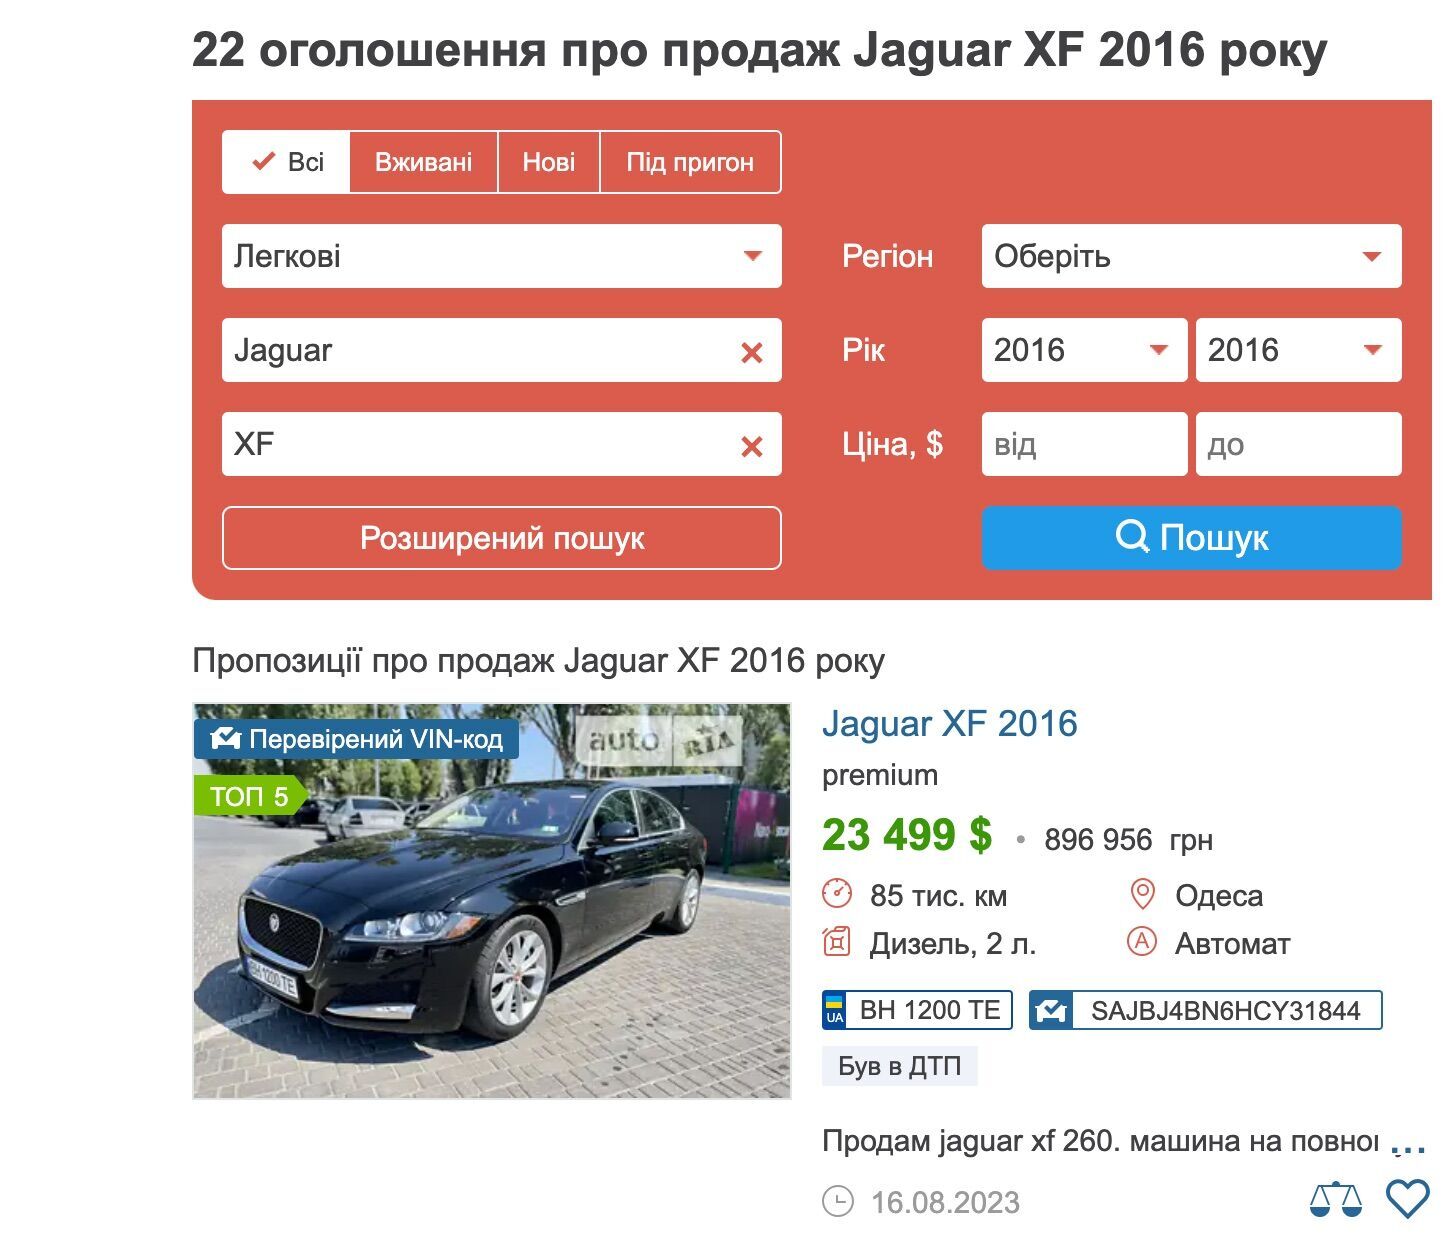 Ринкова вартість такого авто стартує від 800 тис. грн